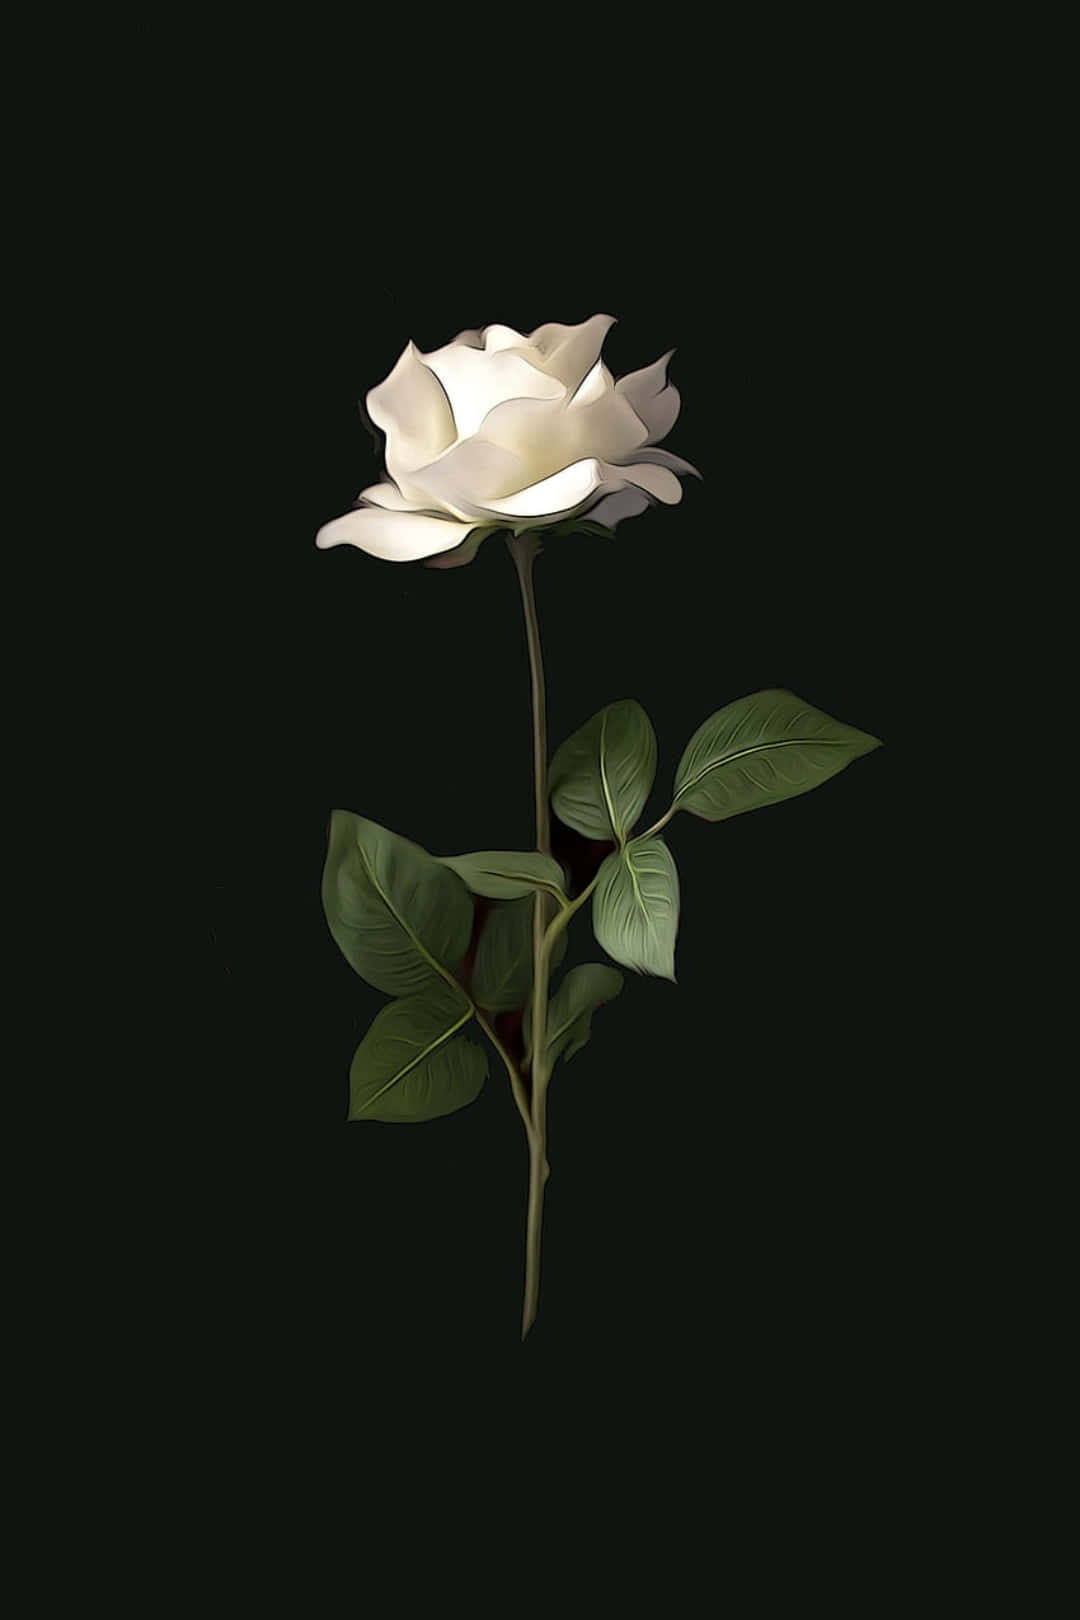 Blomme Iphone Hvid Rose Mørk Fotografi Billede